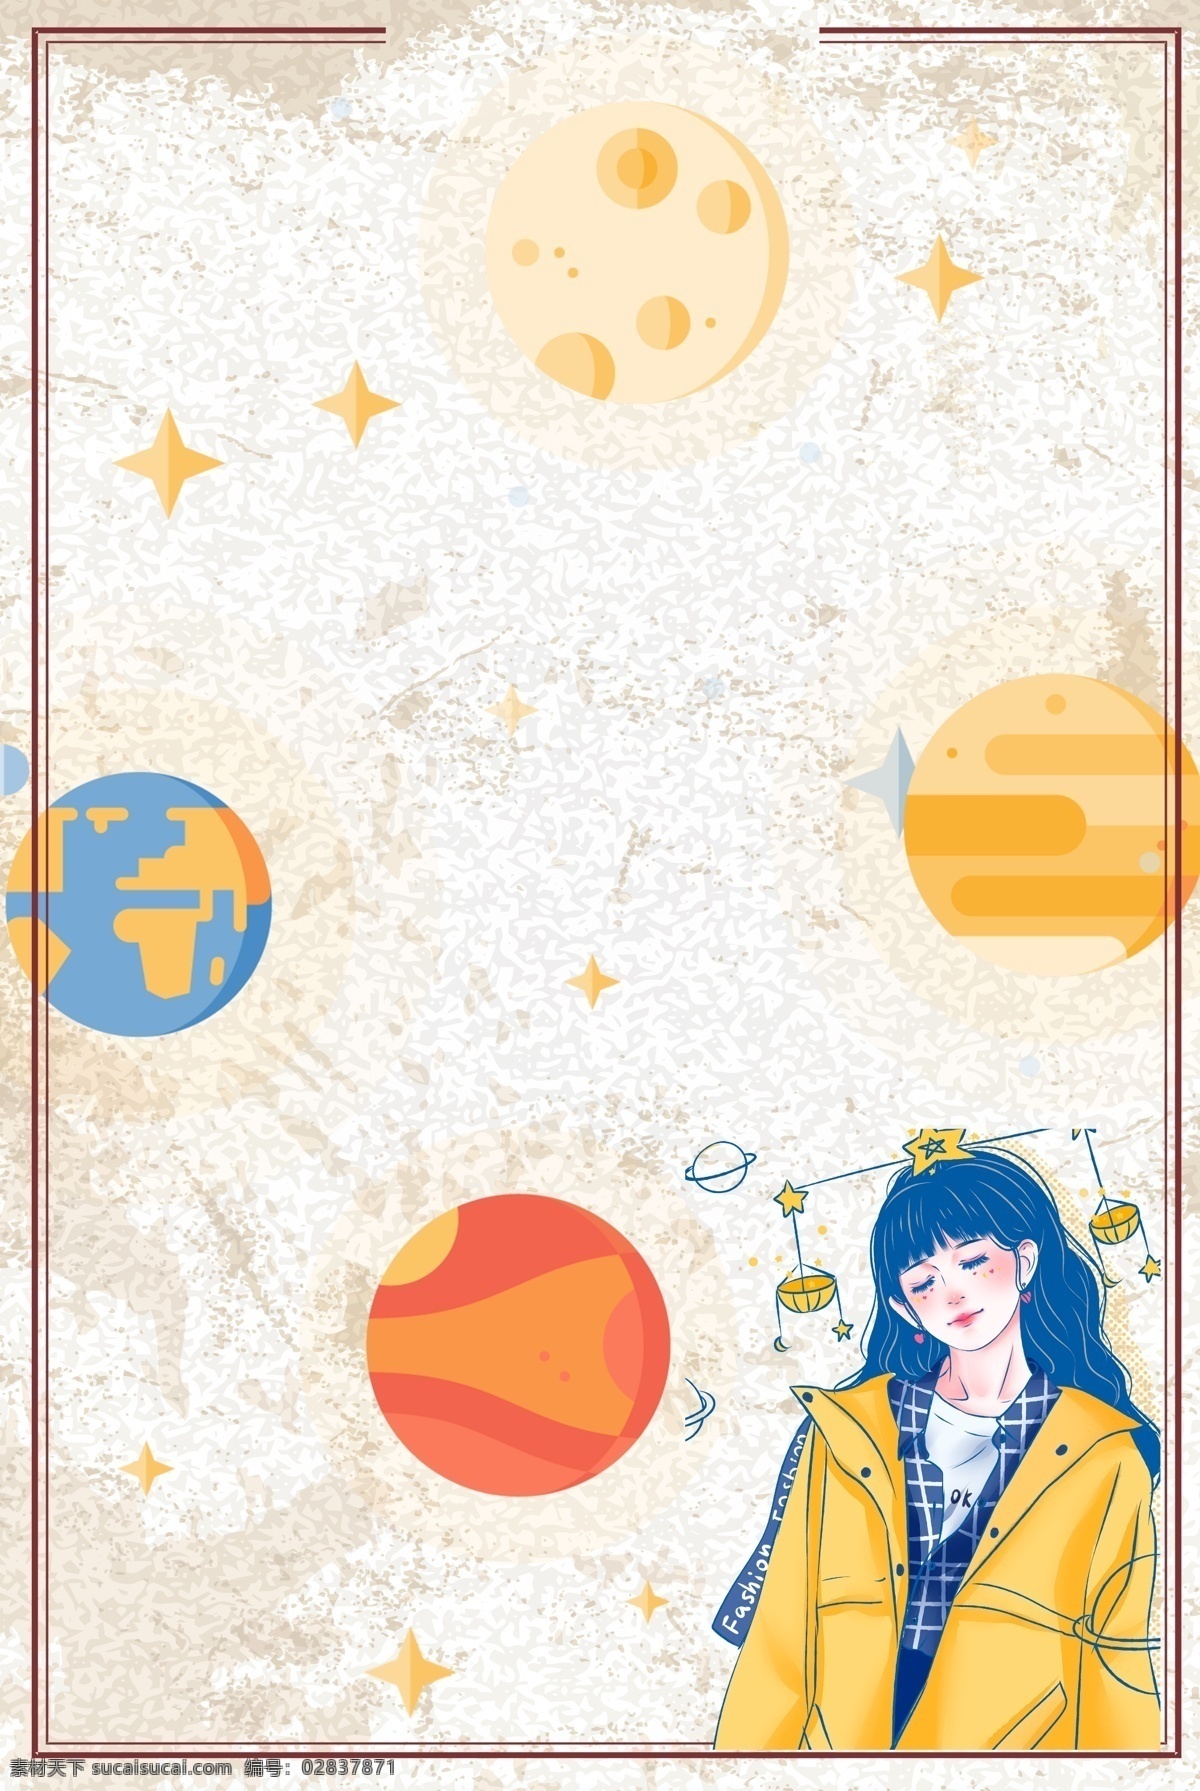 孤单 星球 天秤座 背景 图 纹理元素 星座 孤单星球 手绘 卡通 边框 背景图